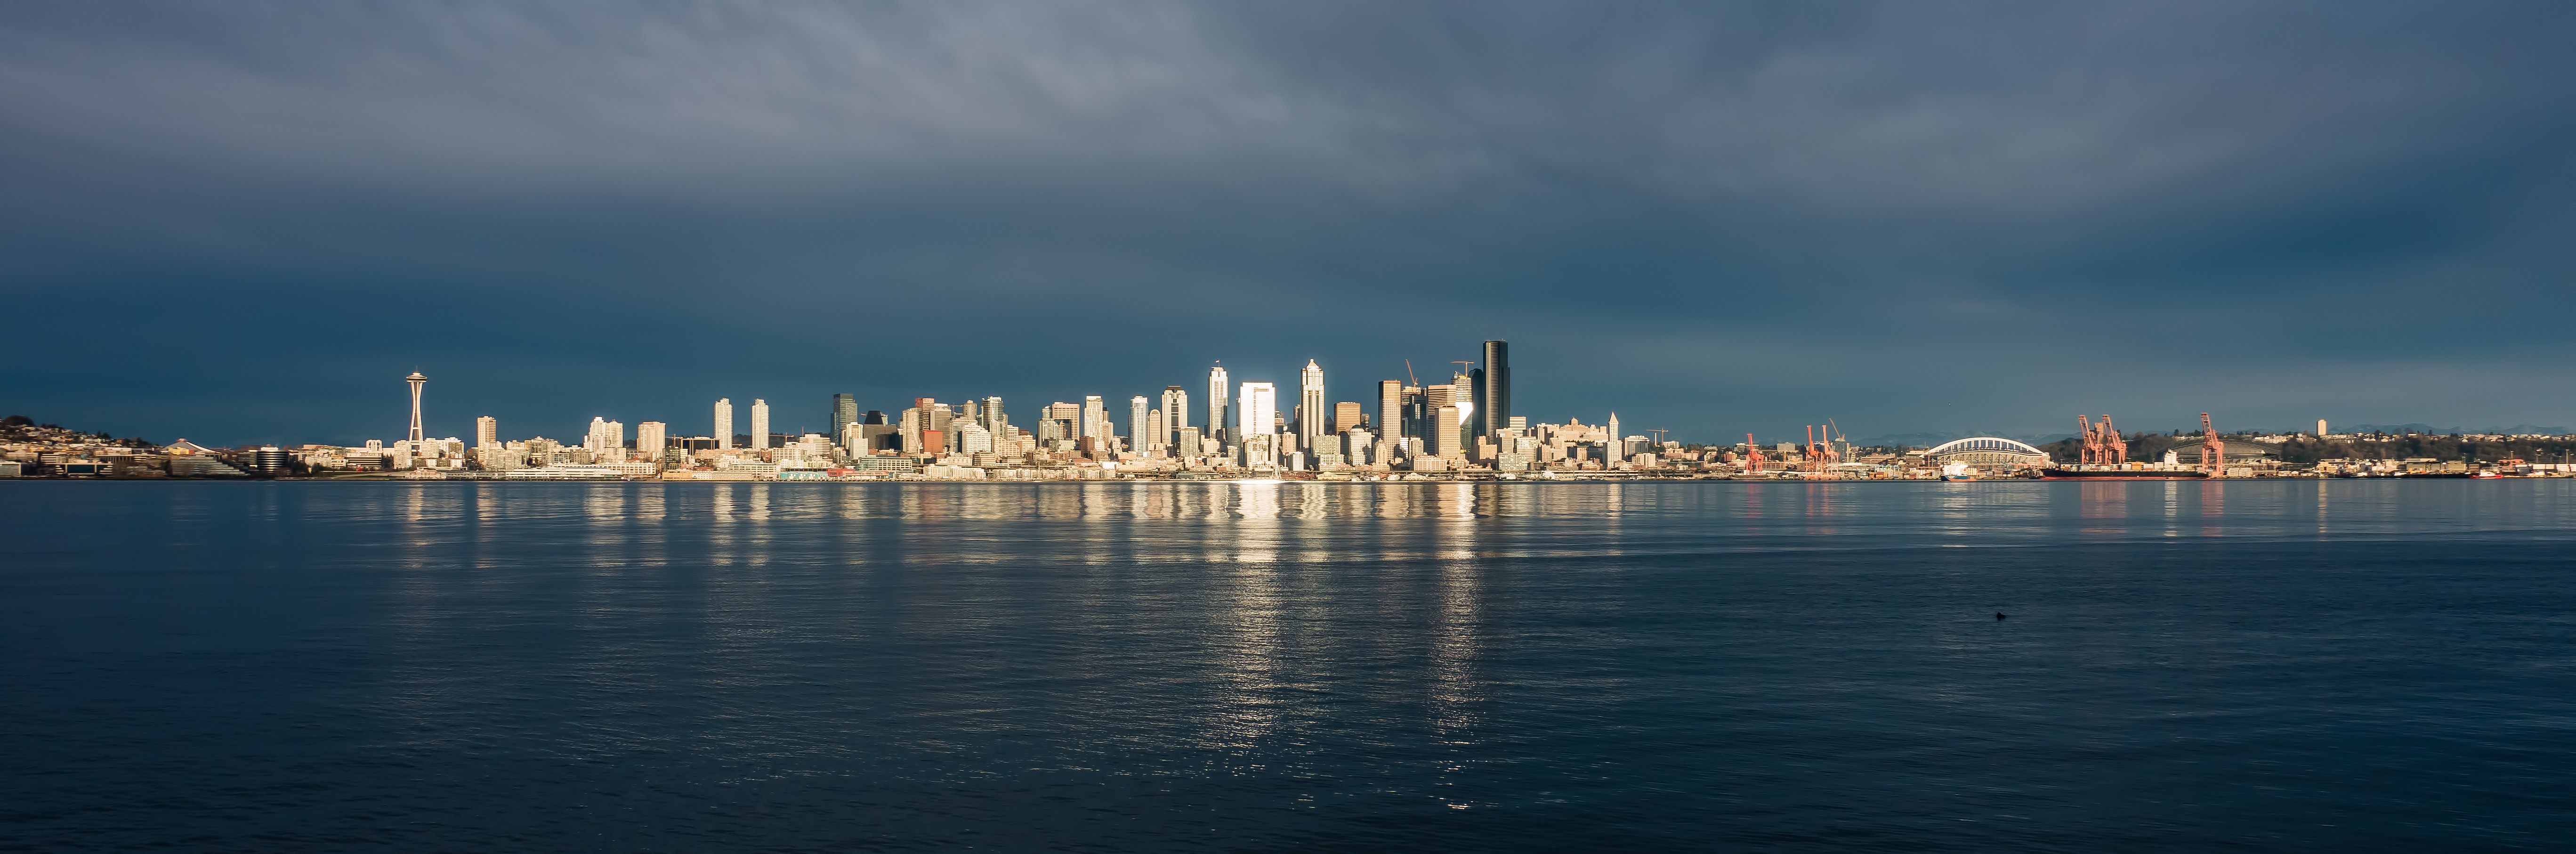 Seattle, Cityscape, Water, Skyscraper, Landscape, City, Building, Architecture Wallpaper